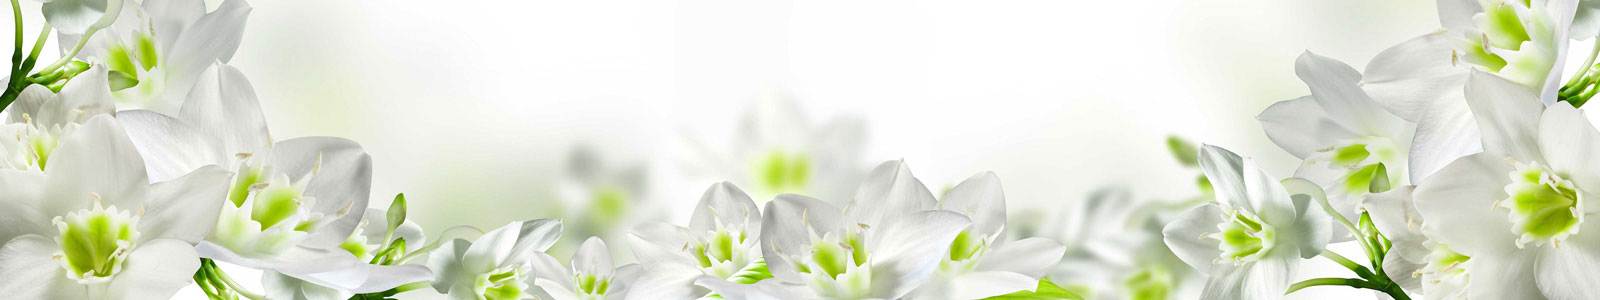 №5675 - Белые цветы Эухариуса (Амазонской лилии) с яркой салатовой сердцевиной на мягком размытом фоне